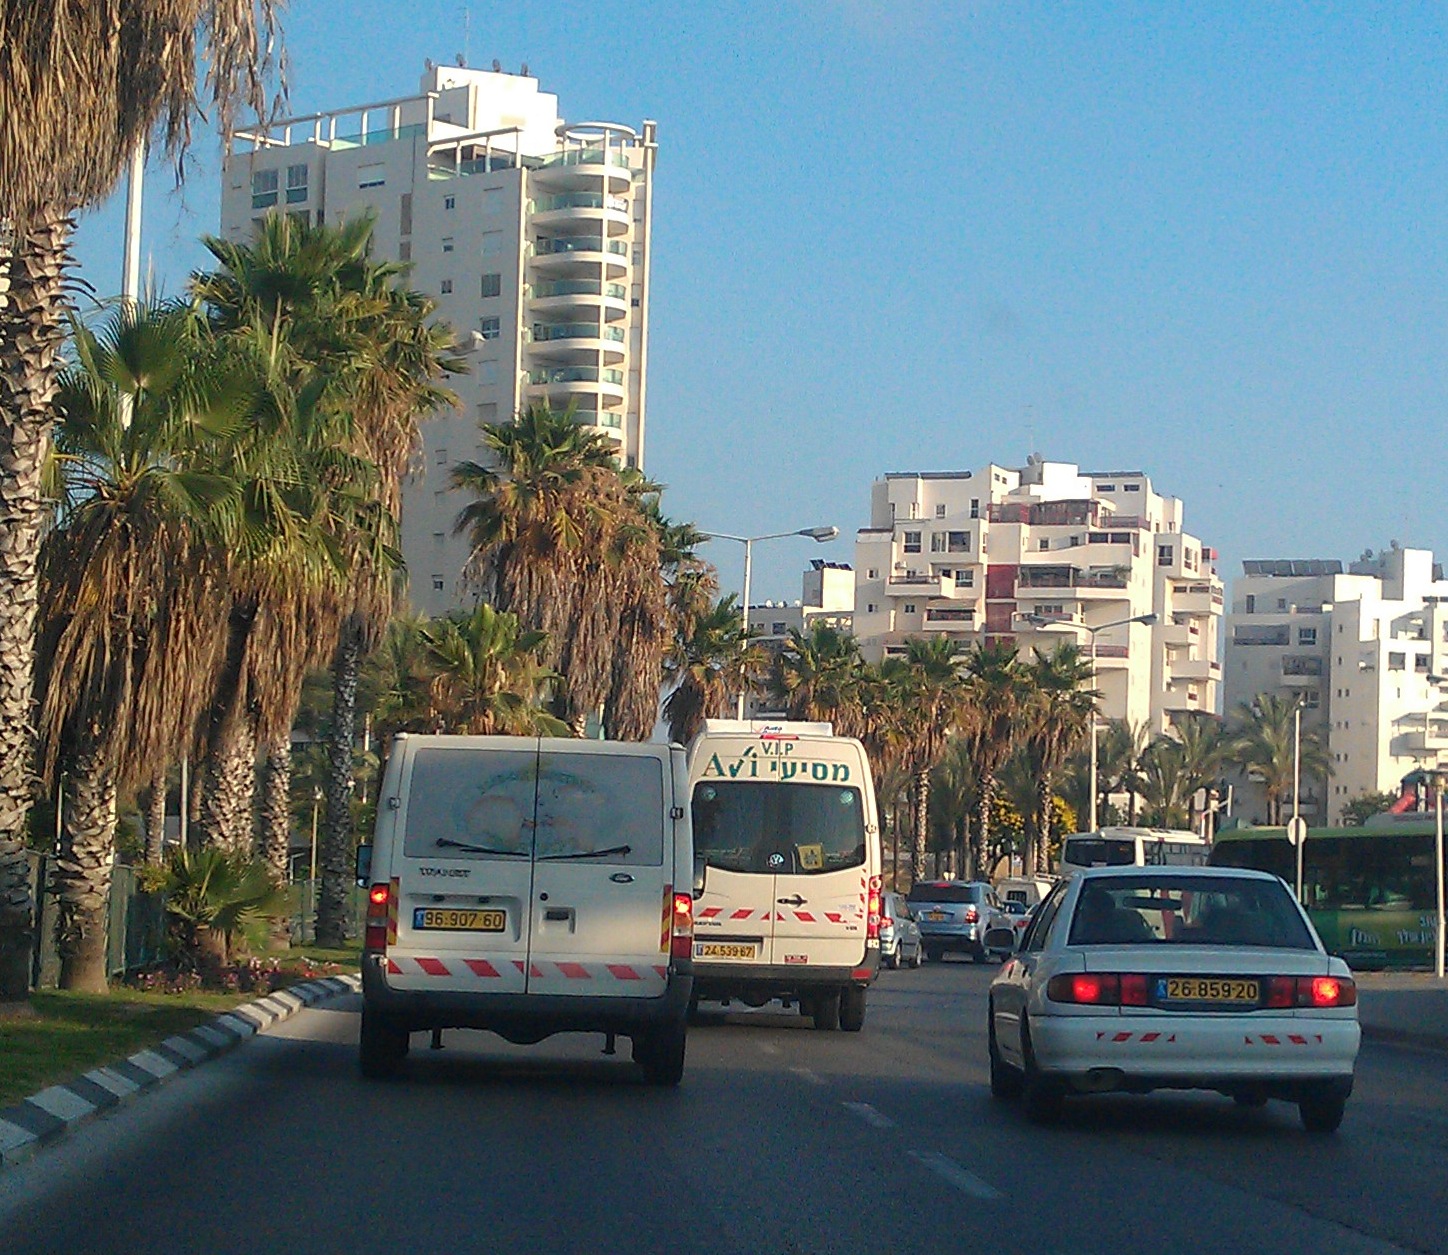 Аренда авто в израиле. важные советы и рекомендации